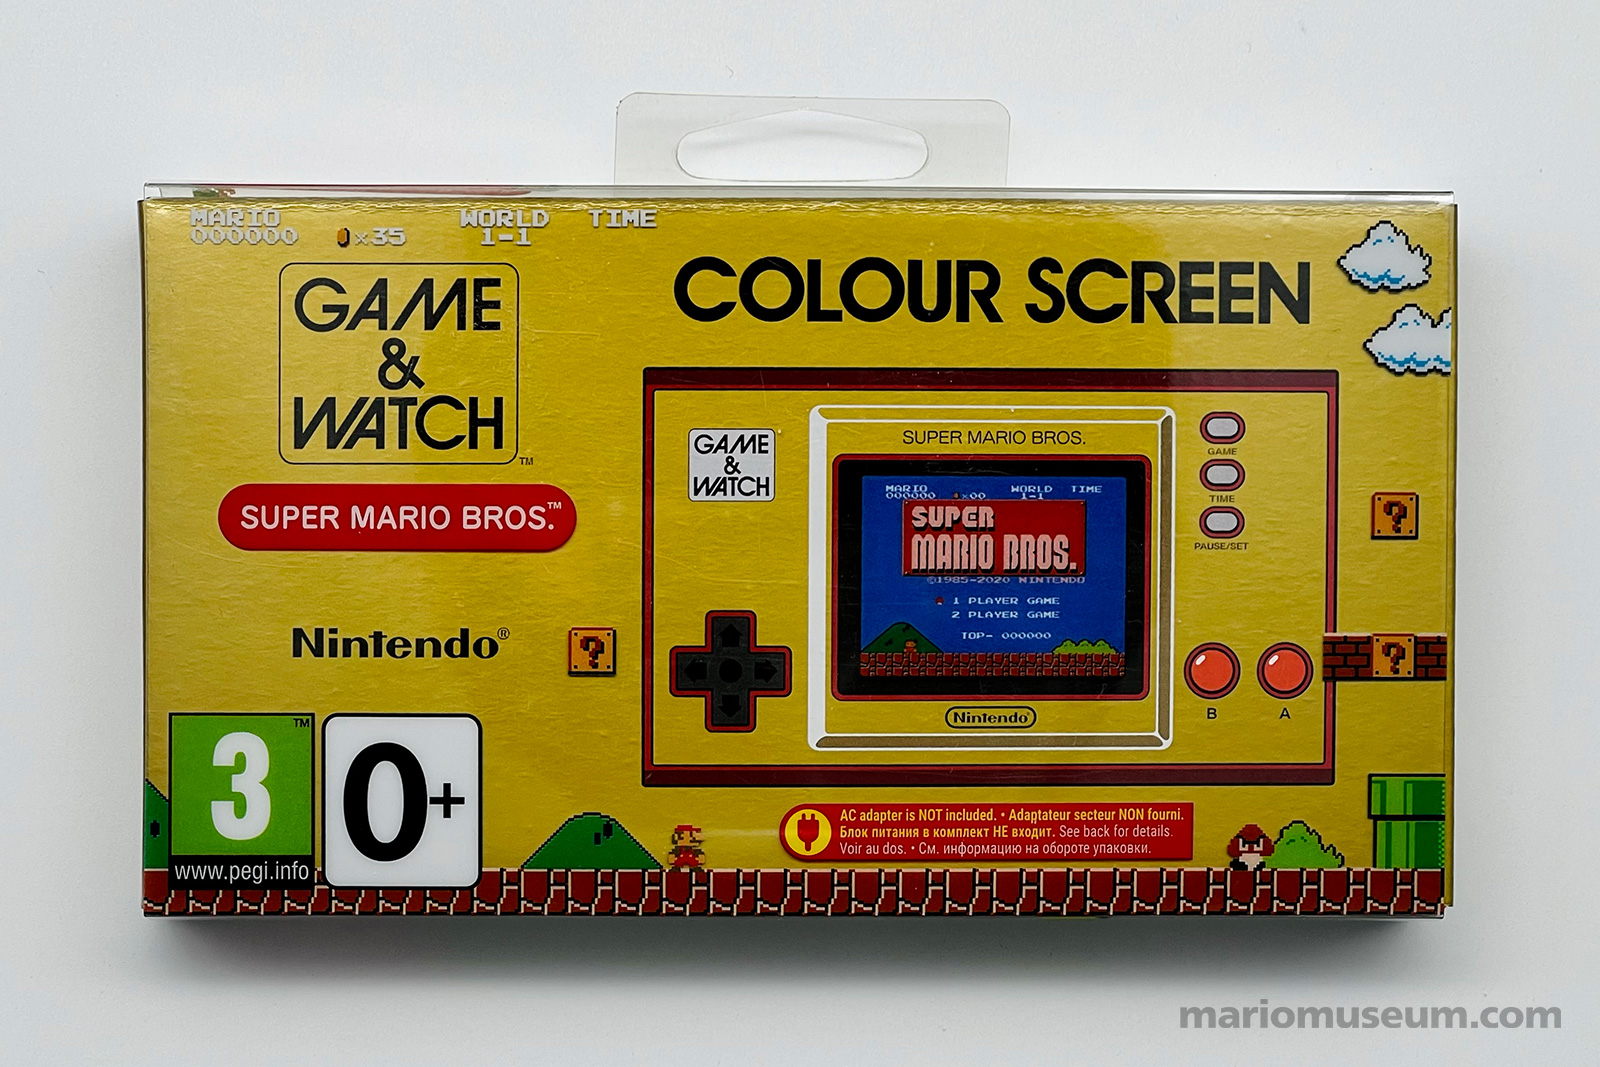 Game & Watch Super Mario Bros. Colour Screen